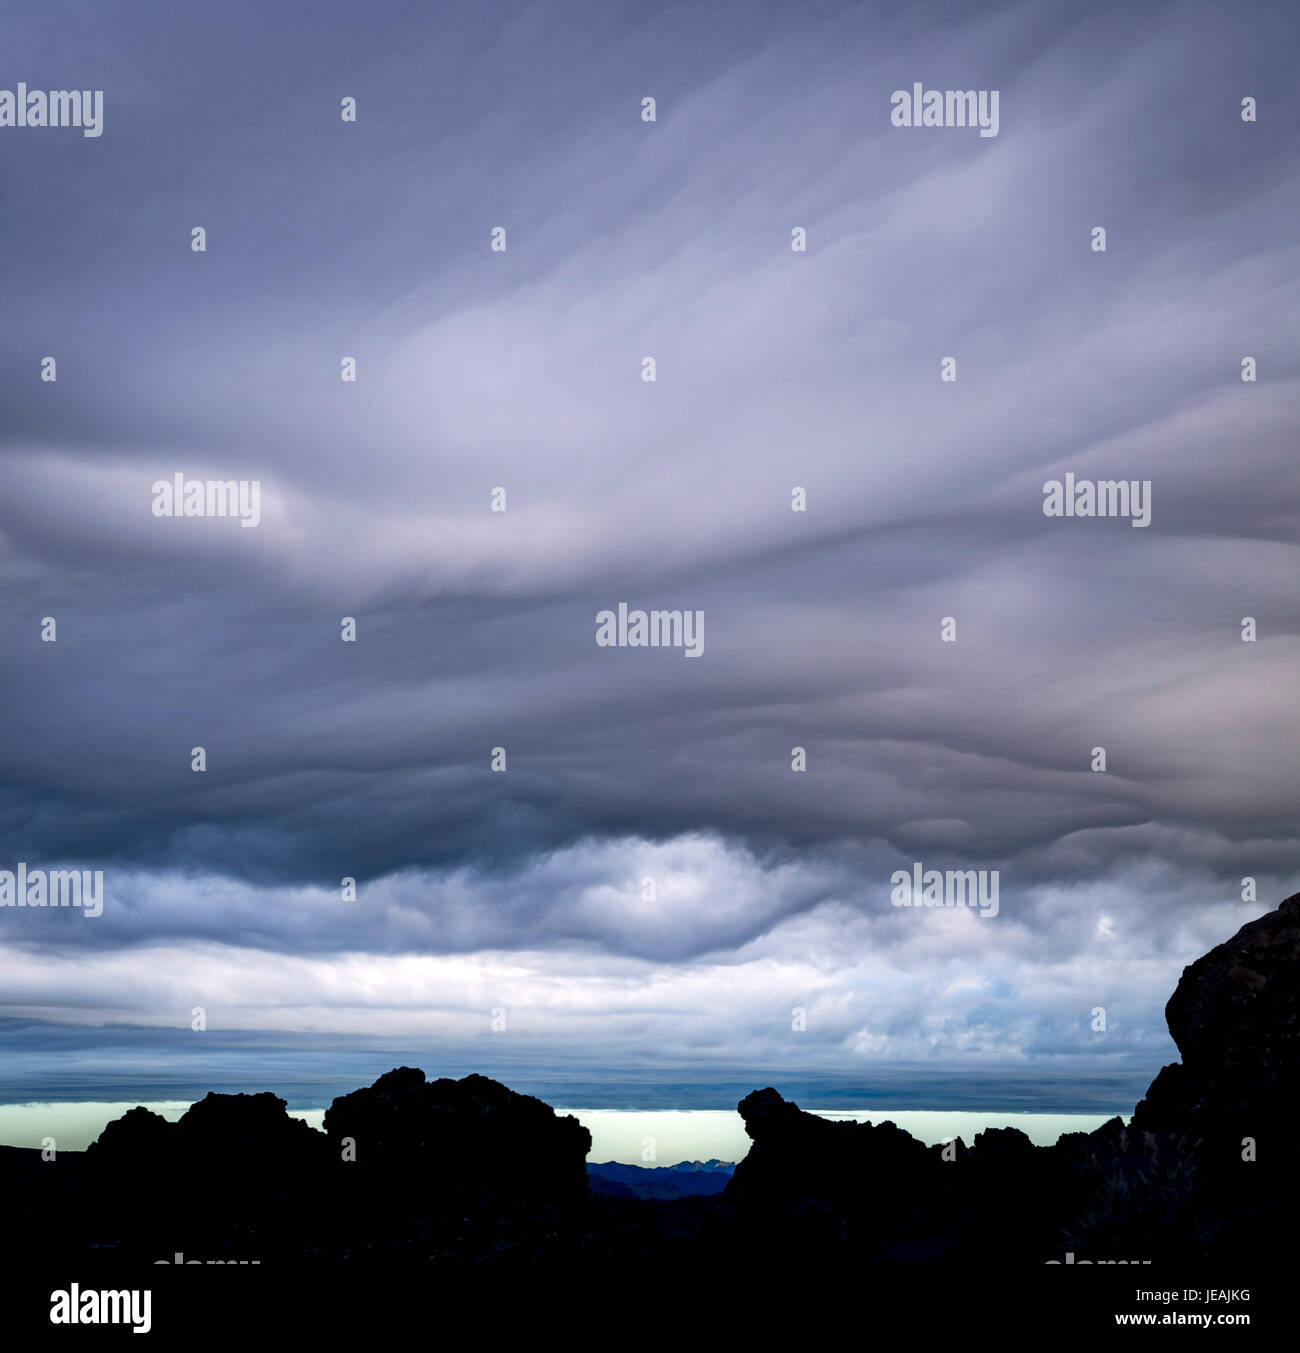 Nubes de tormenta / storm clouds. Malalcahuello, Chile Stock Photo